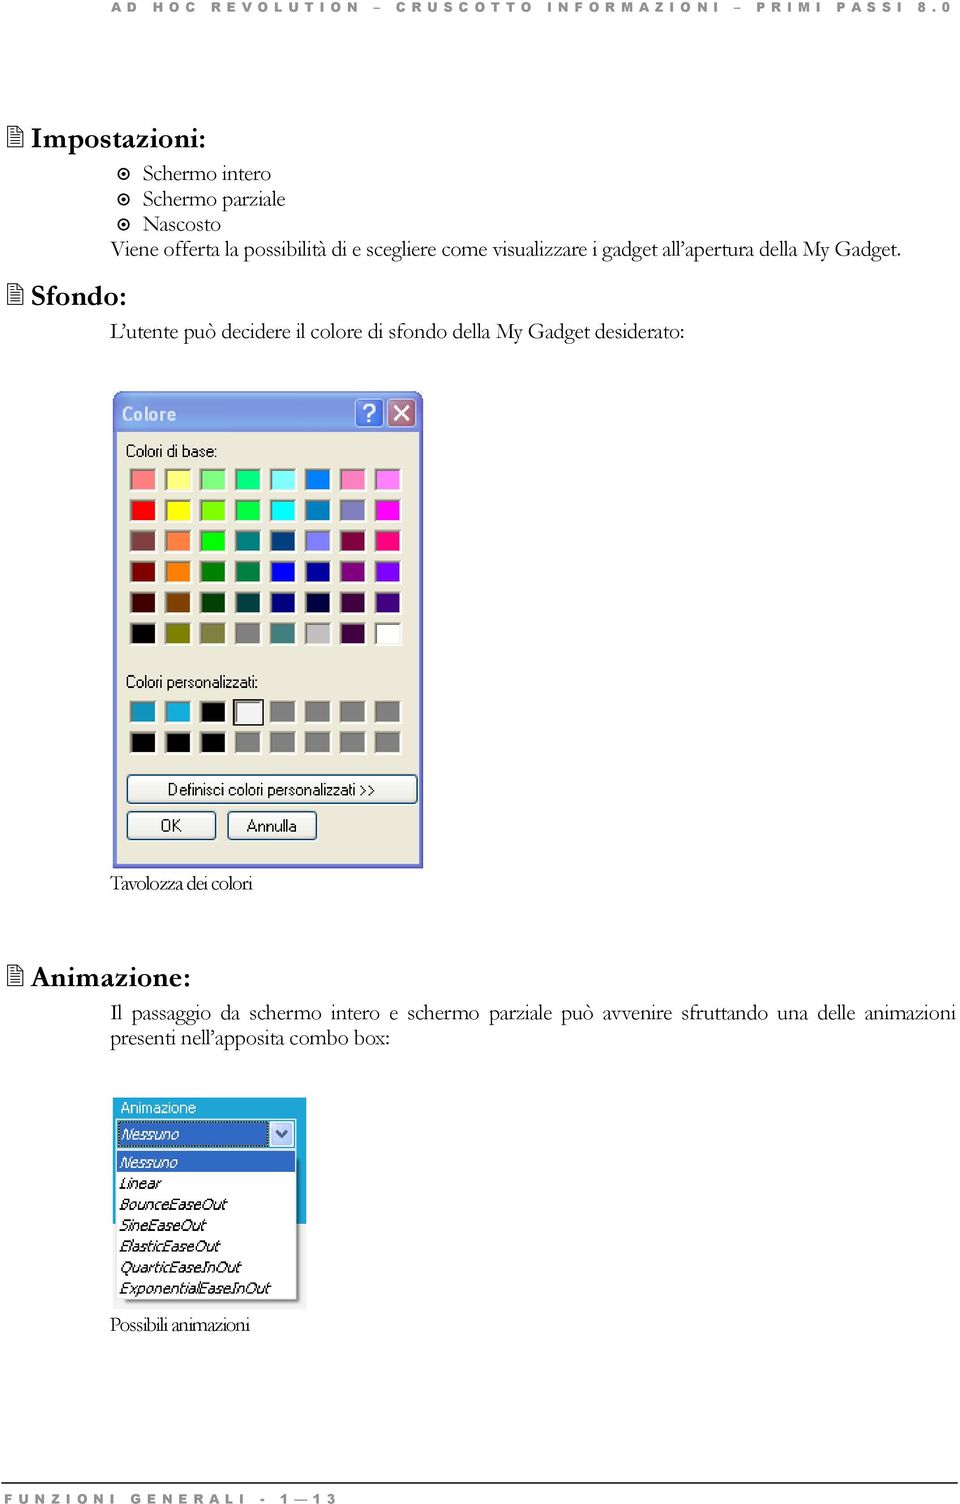 Sfondo: L utente può decidere il colore di sfondo della My Gadget desiderato: Tavolozza dei colori Animazione: Il